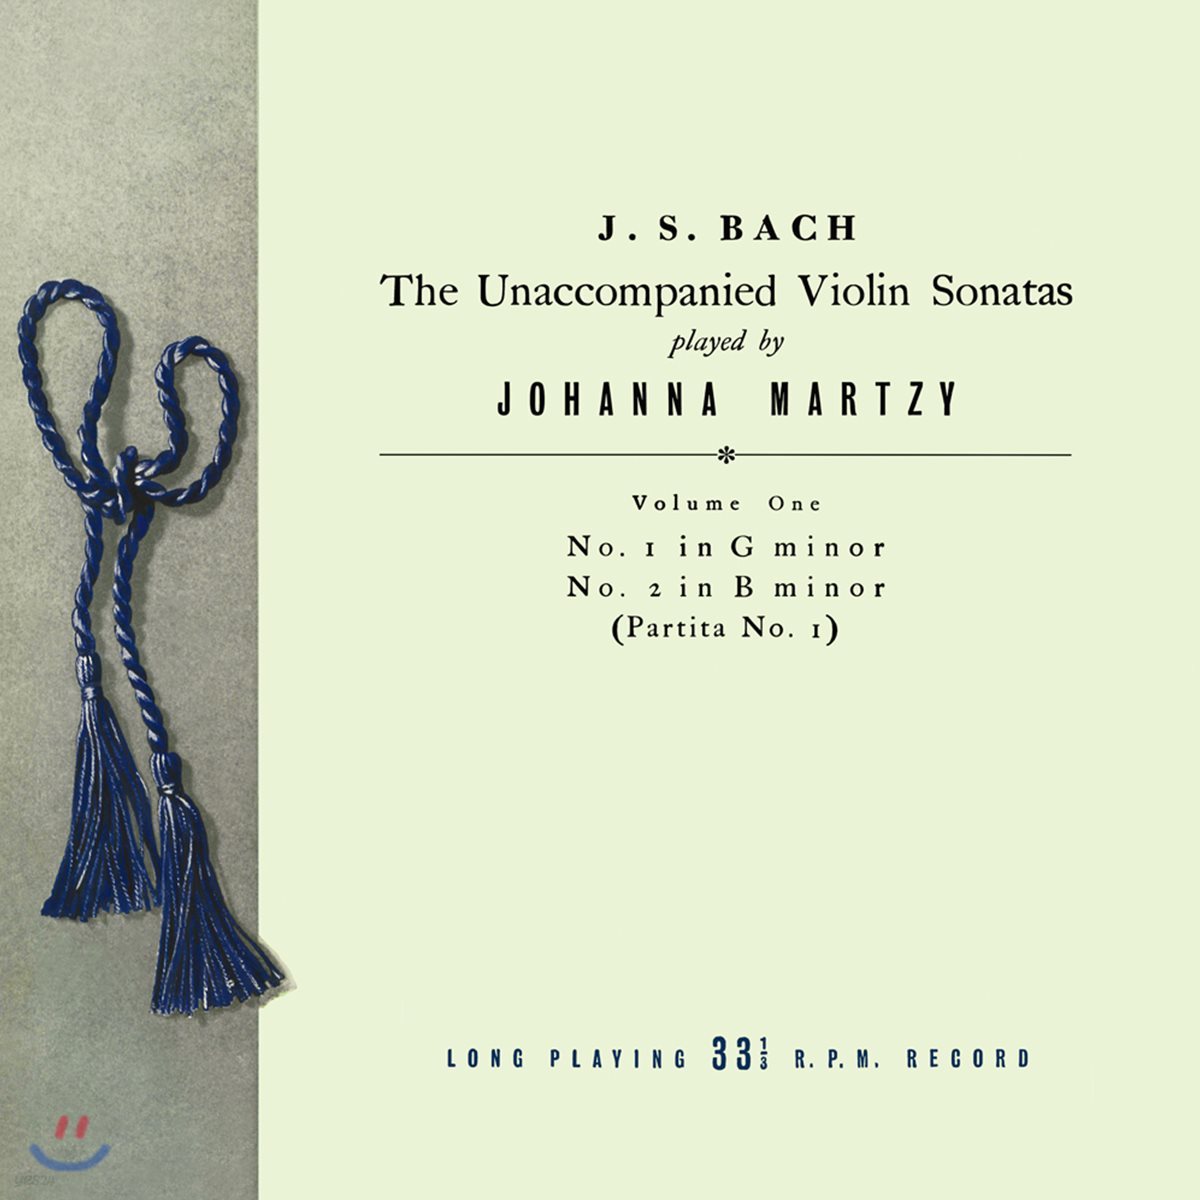 요한나 마르치 - 바흐: 무반주 바이올린 소나타 &amp; 파르티타 1집 BWV1001 &amp; 1002 (Johanna Martzy - J.S. Bach: The Unaccompanied Violin Sonatas Volume One) [LP]